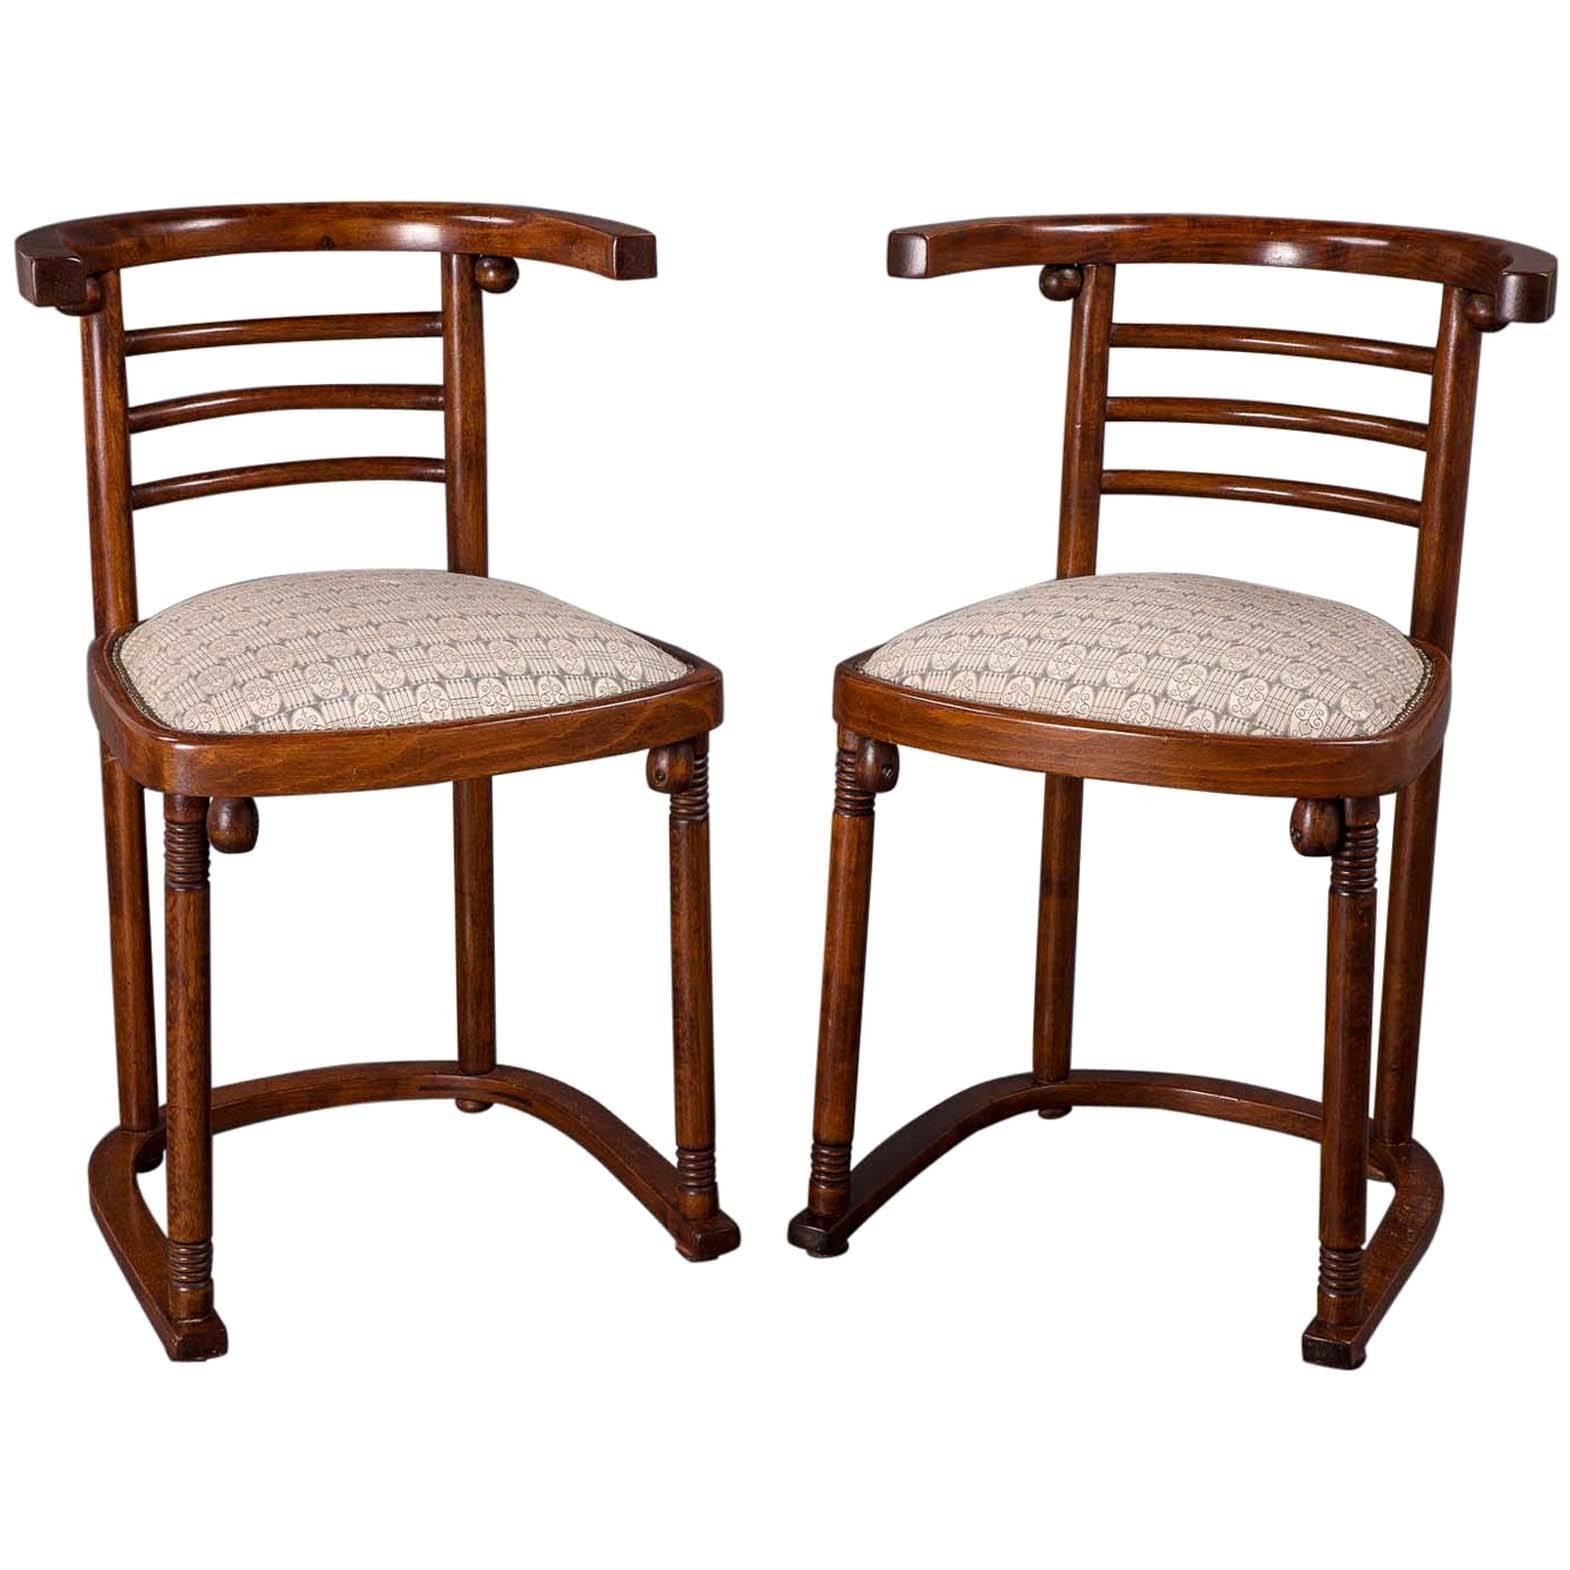 Pair of Joseph Hoffmann “Die Fledermaus” Chairs For Sale